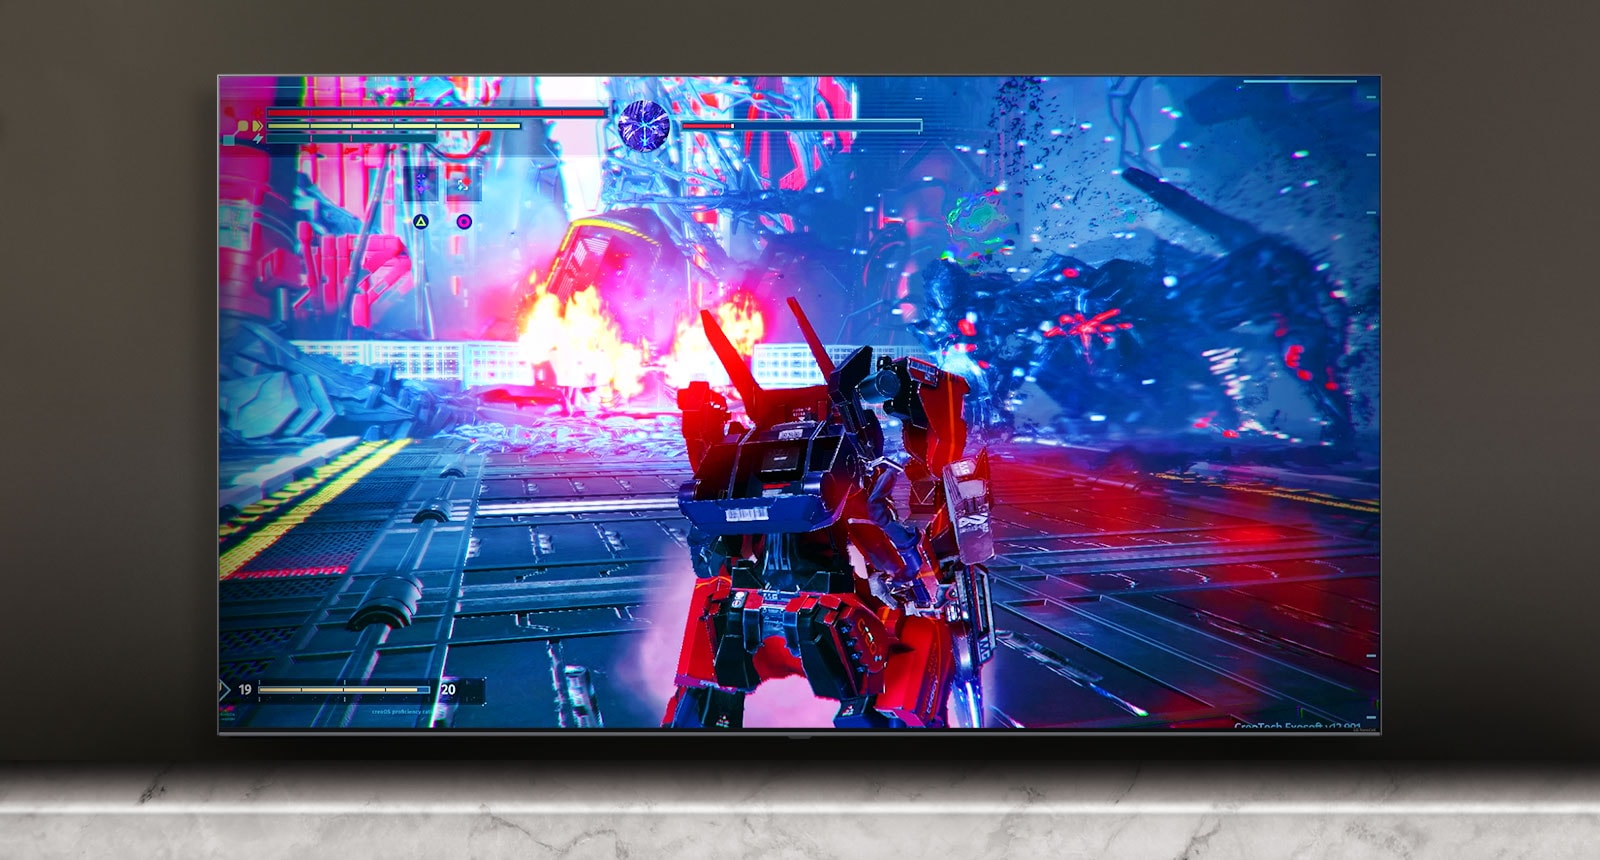 La scena di un gioco di combattimento viene visualizzata sullo schermo della TV.